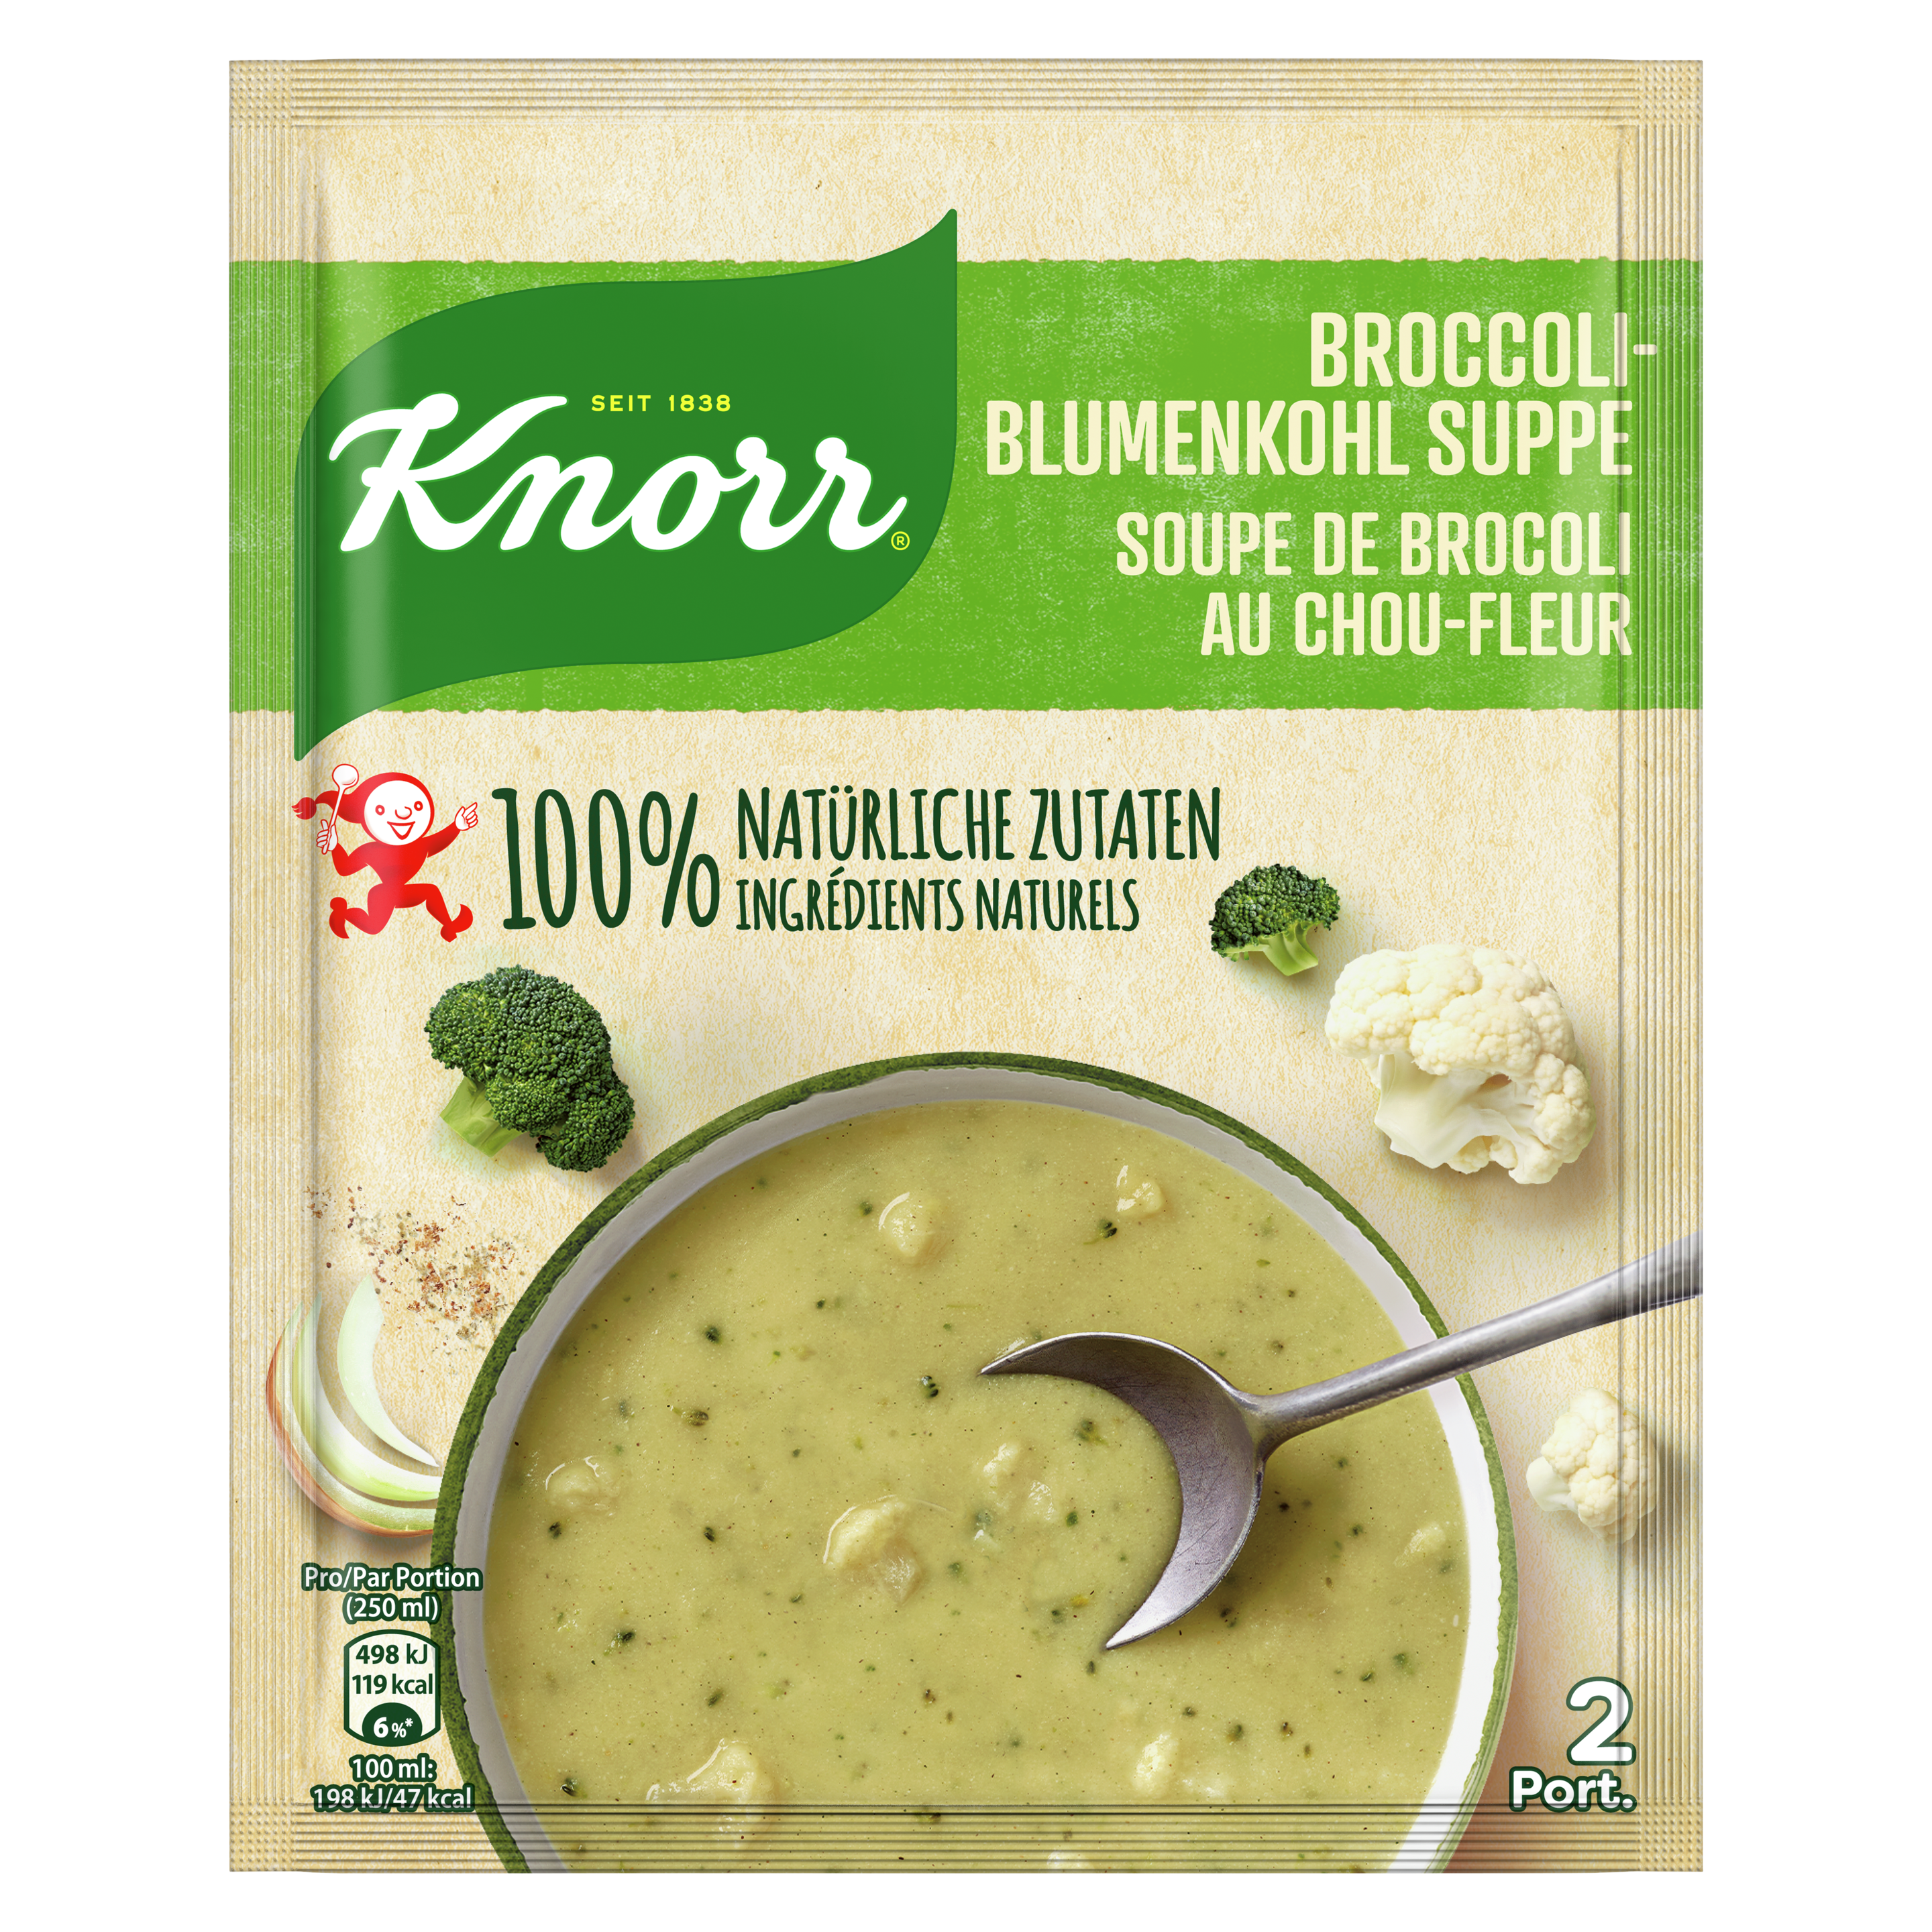 KNORR 100% natürliche Zutaten Broccoli-Blumenkohl Suppe Beutel 2 Portionen